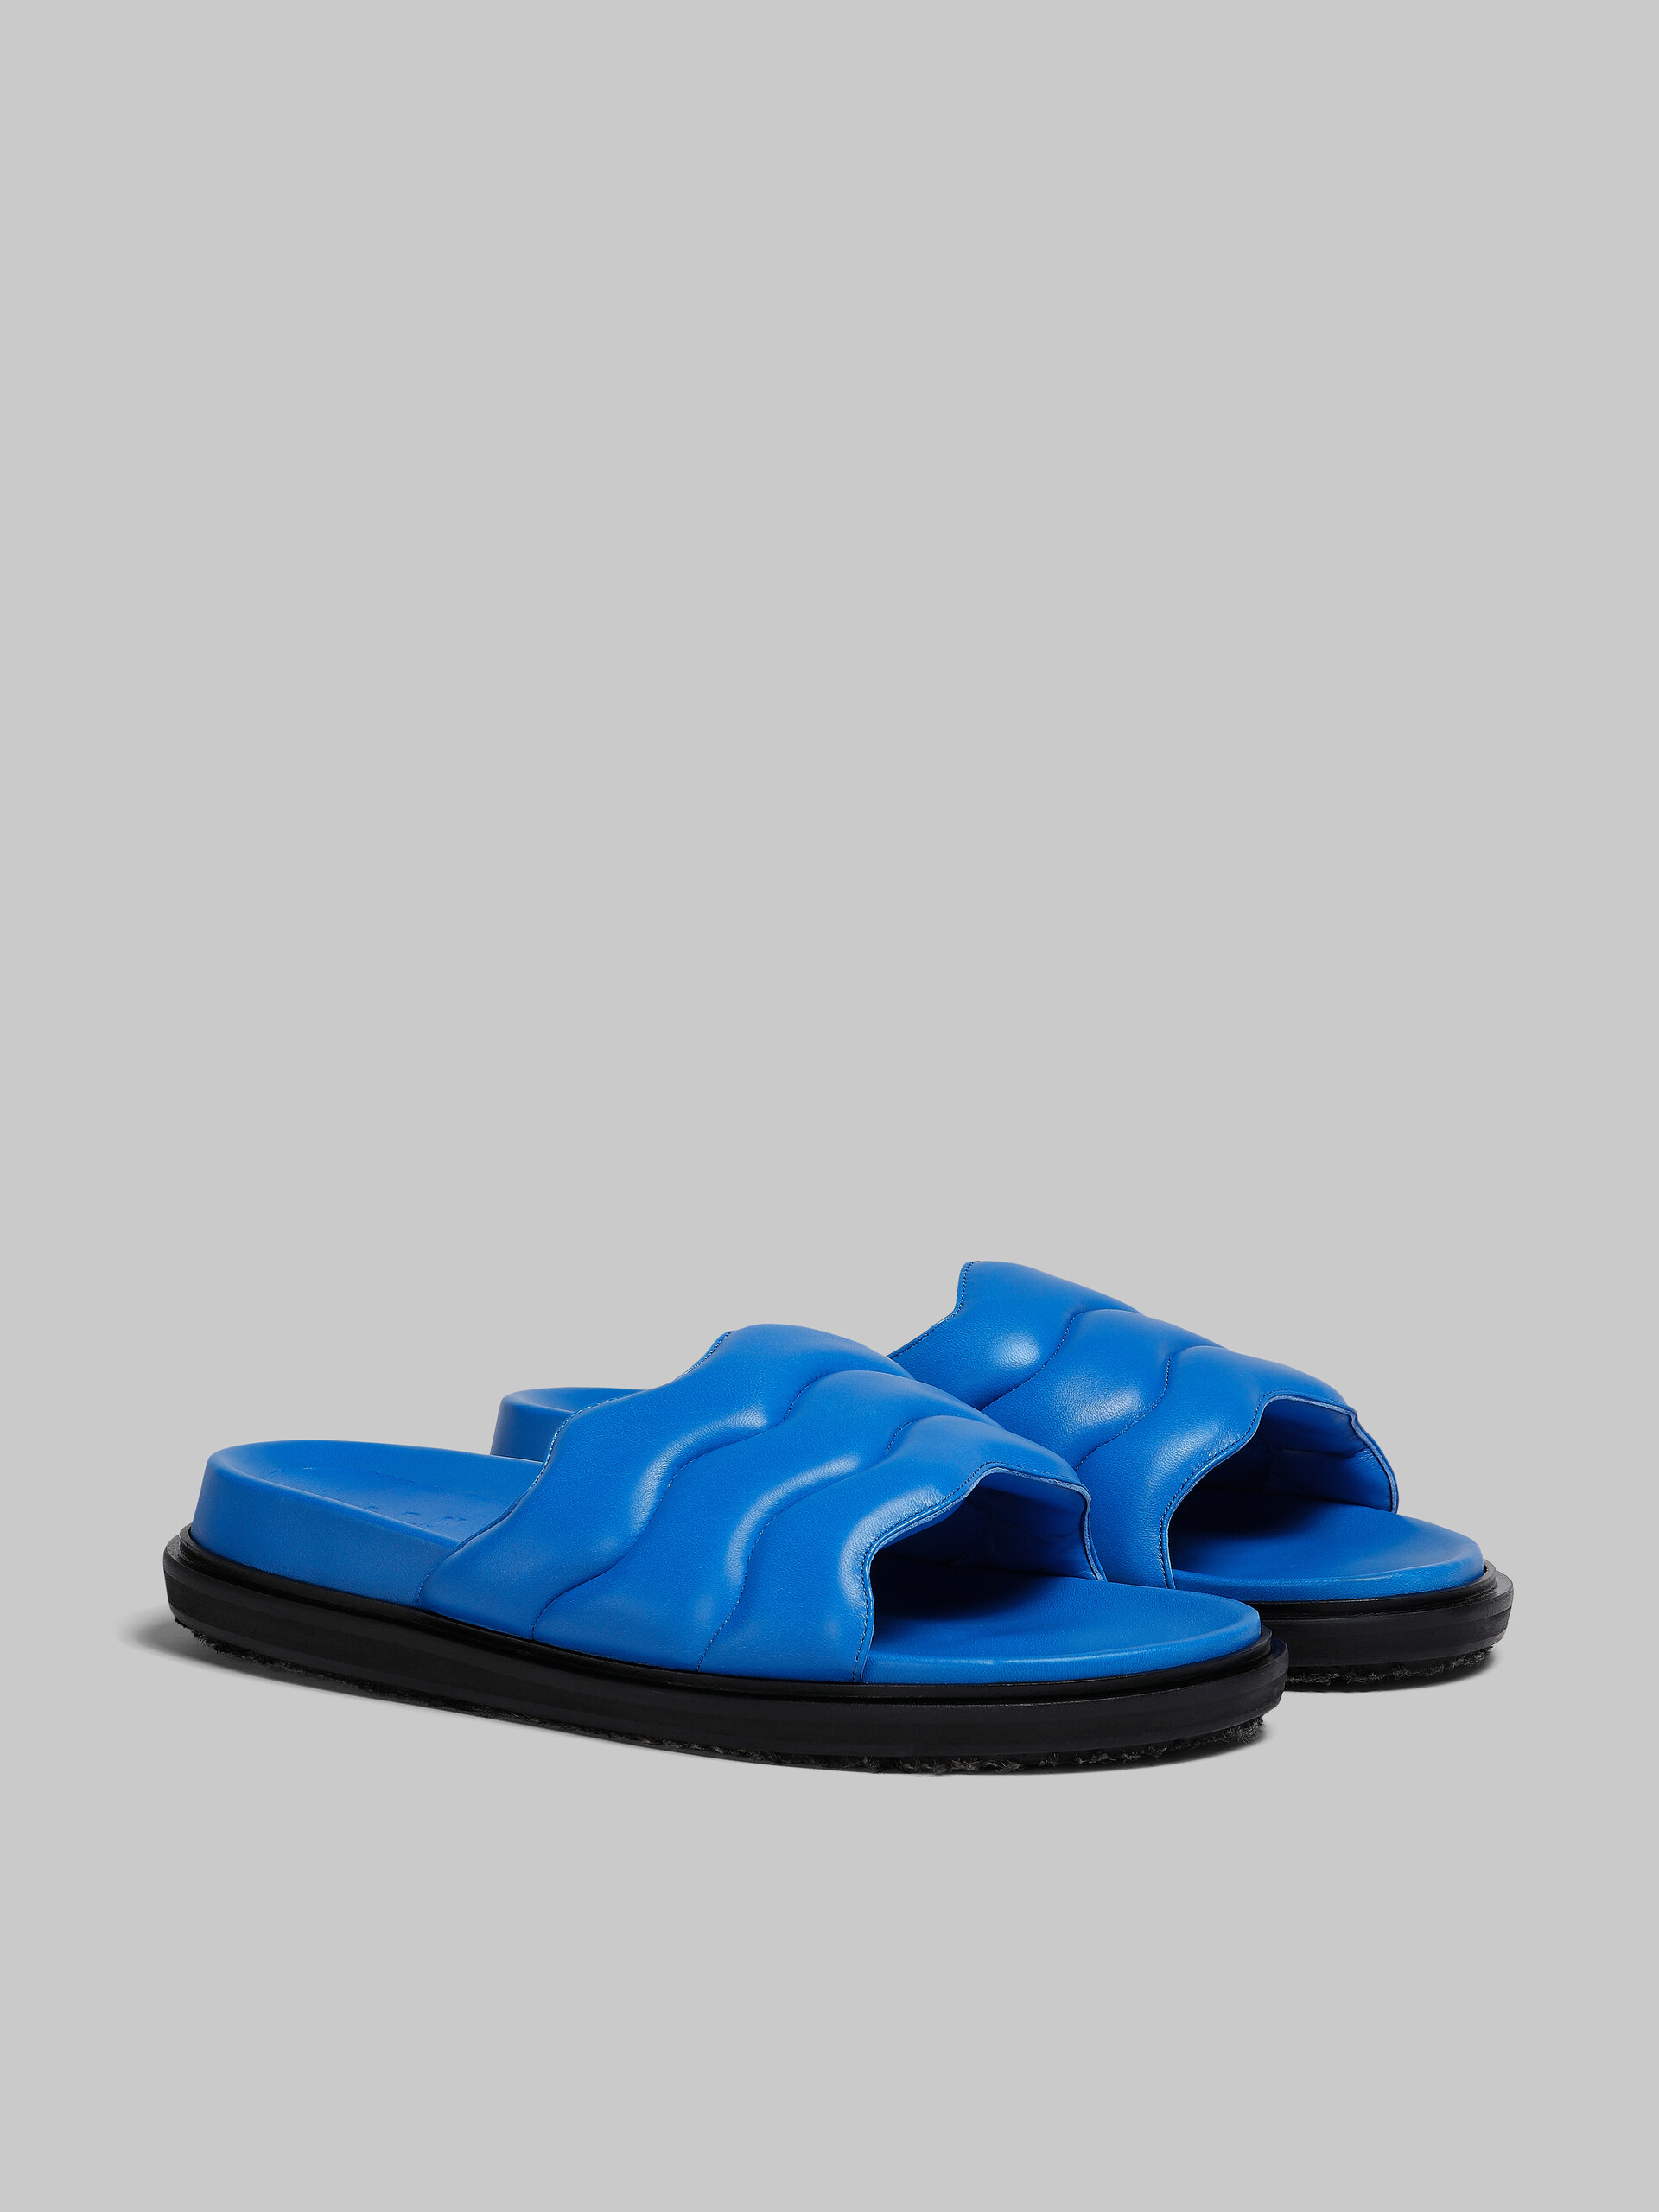 Blue wavy leather slide sandal - Sandals - Image 2